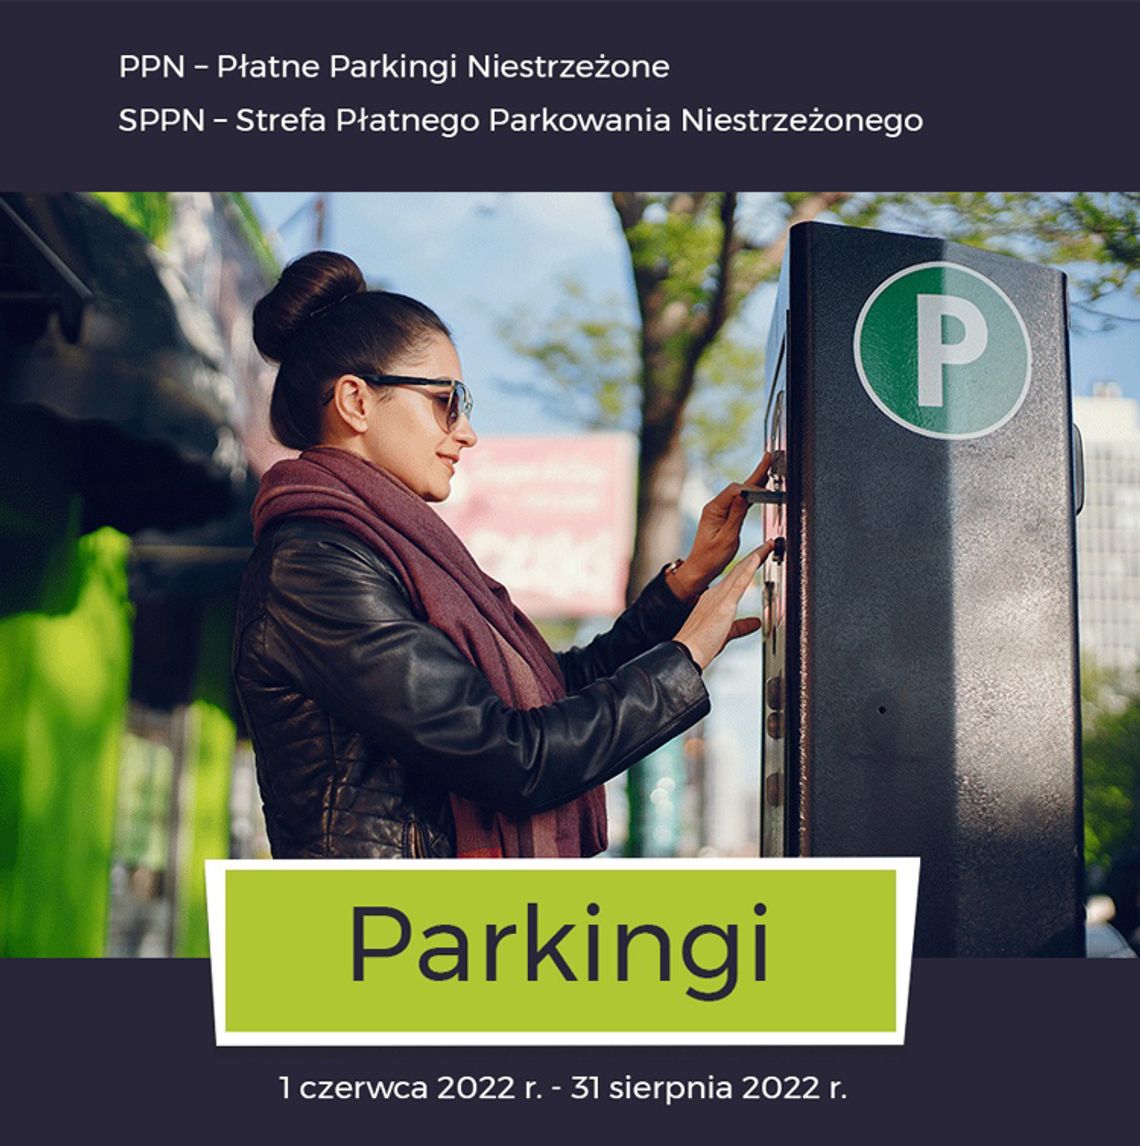 Darłowo: Płatne parkingi od 1 czerwca